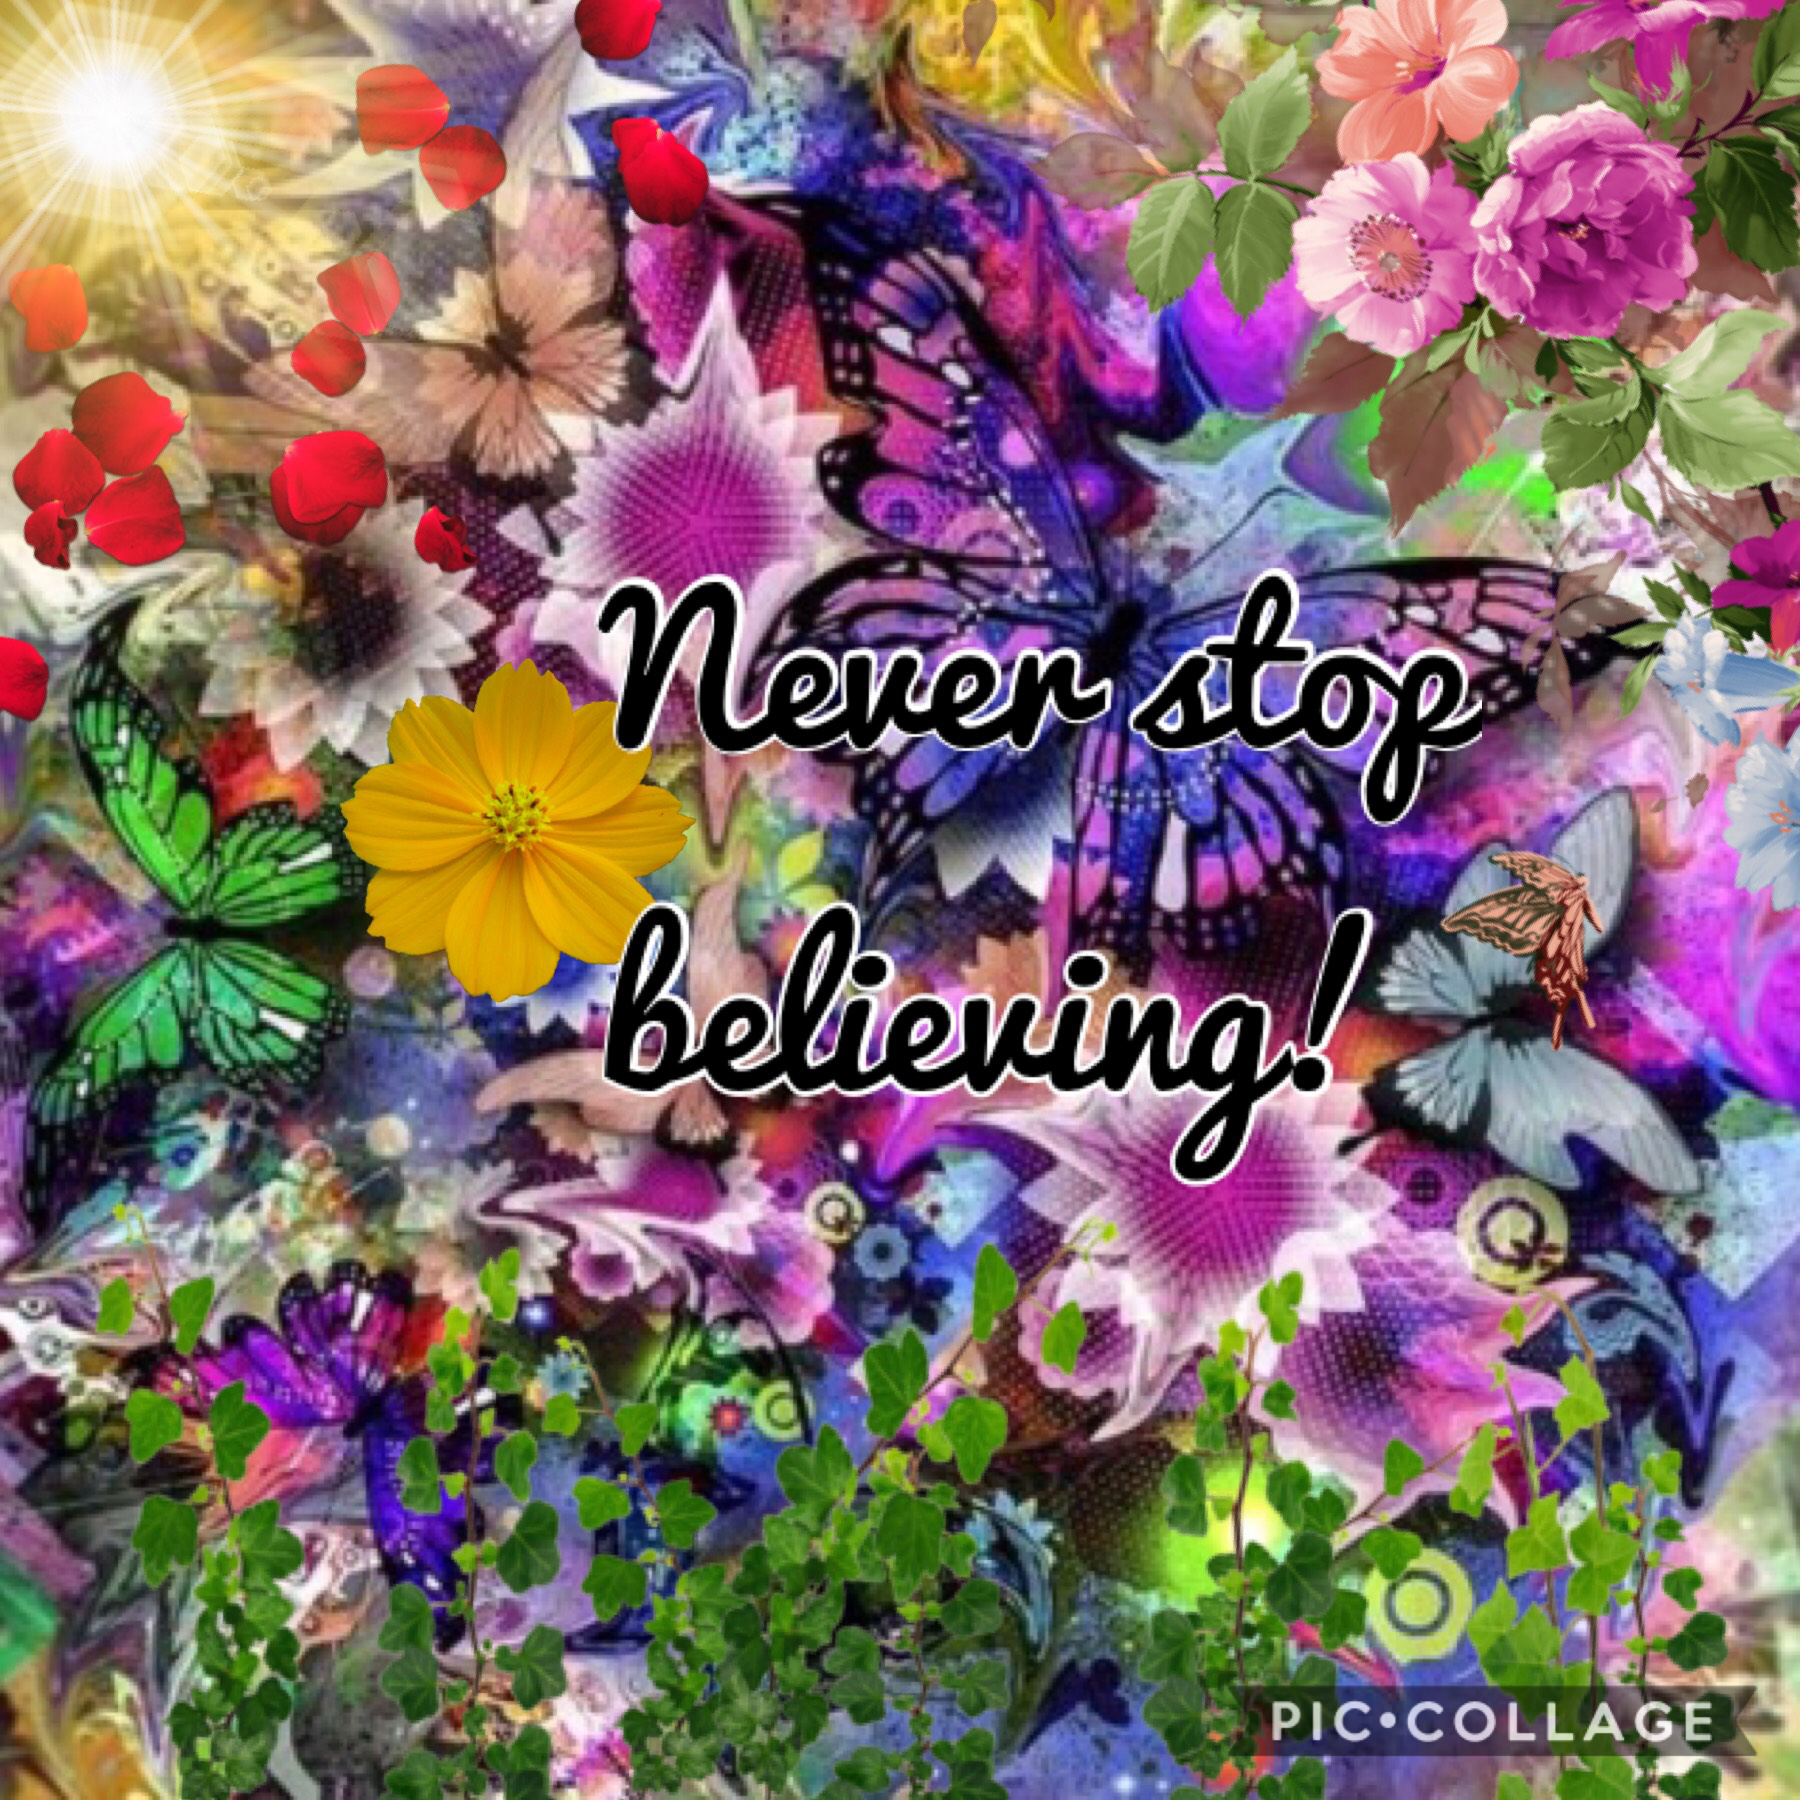 Never stop believing! 🦋